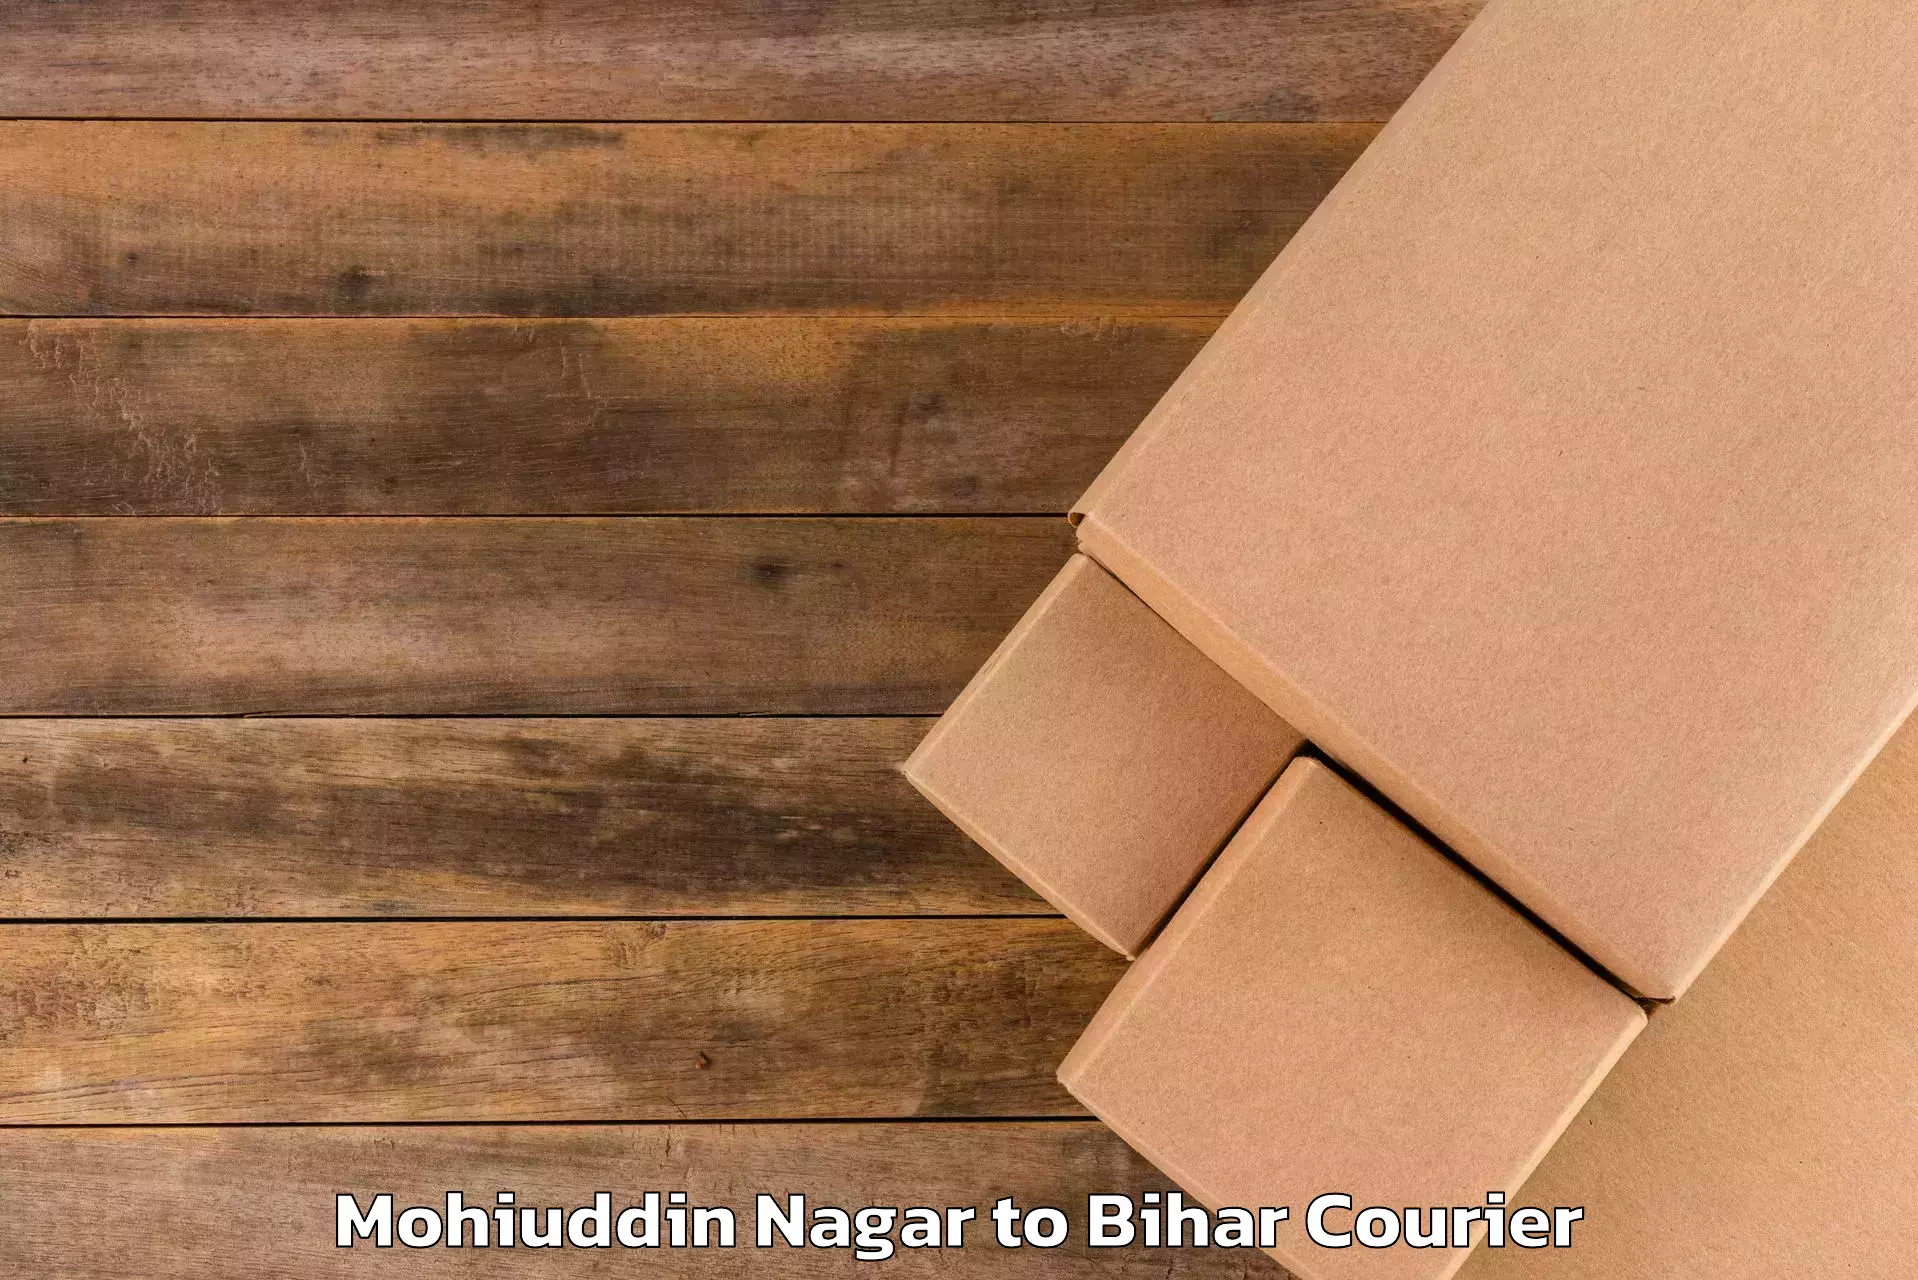 Baggage courier operations Mohiuddin Nagar to Gaya